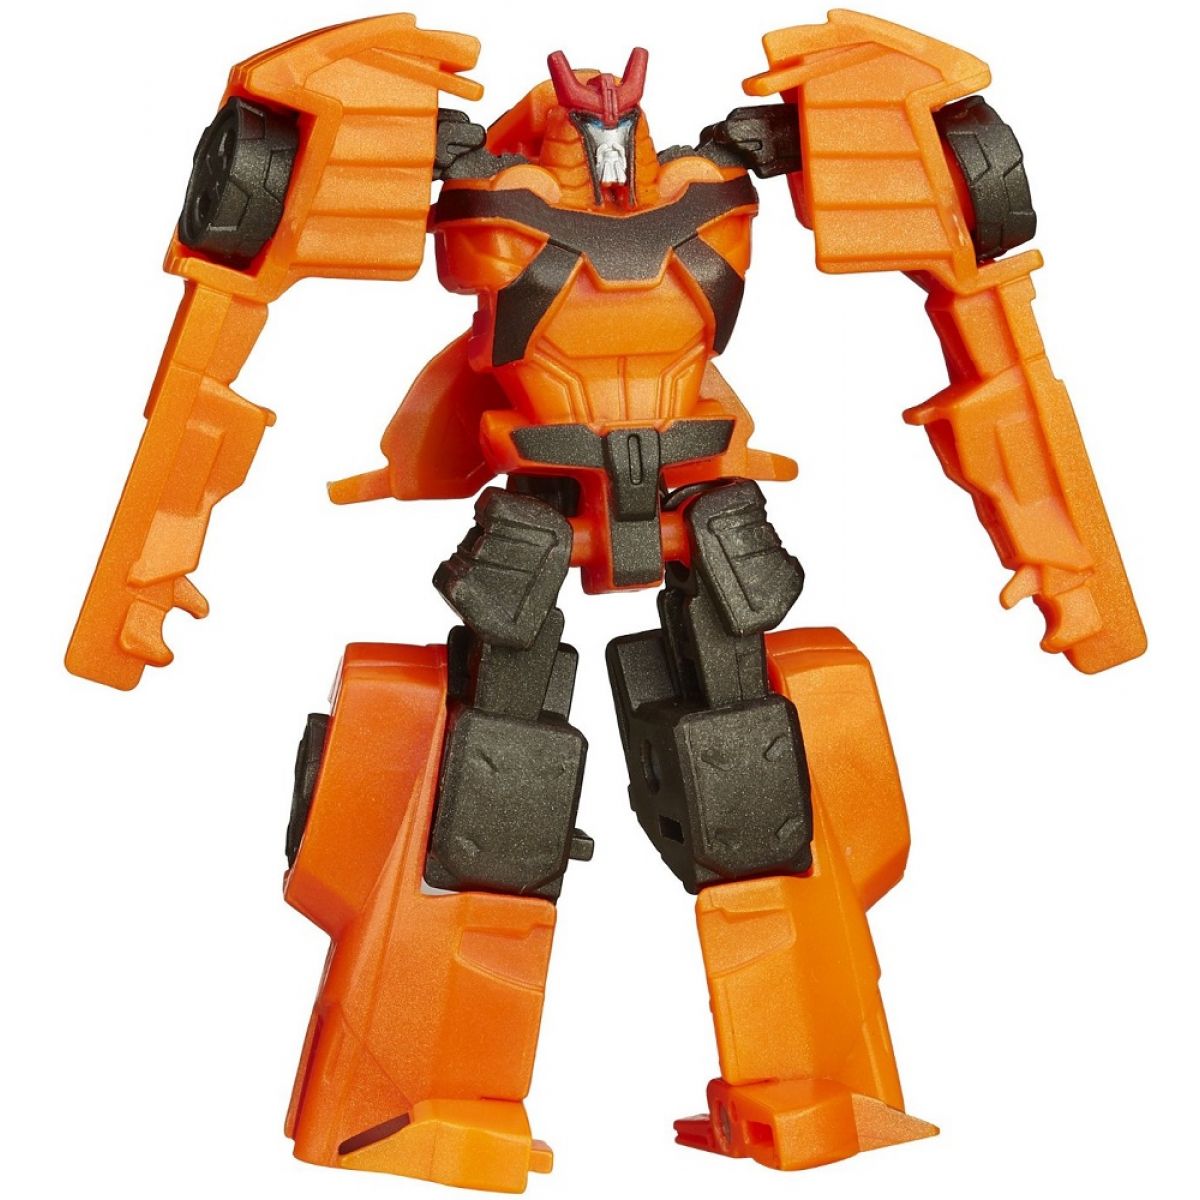 Transformers RID základní charakter - Autobot Drift